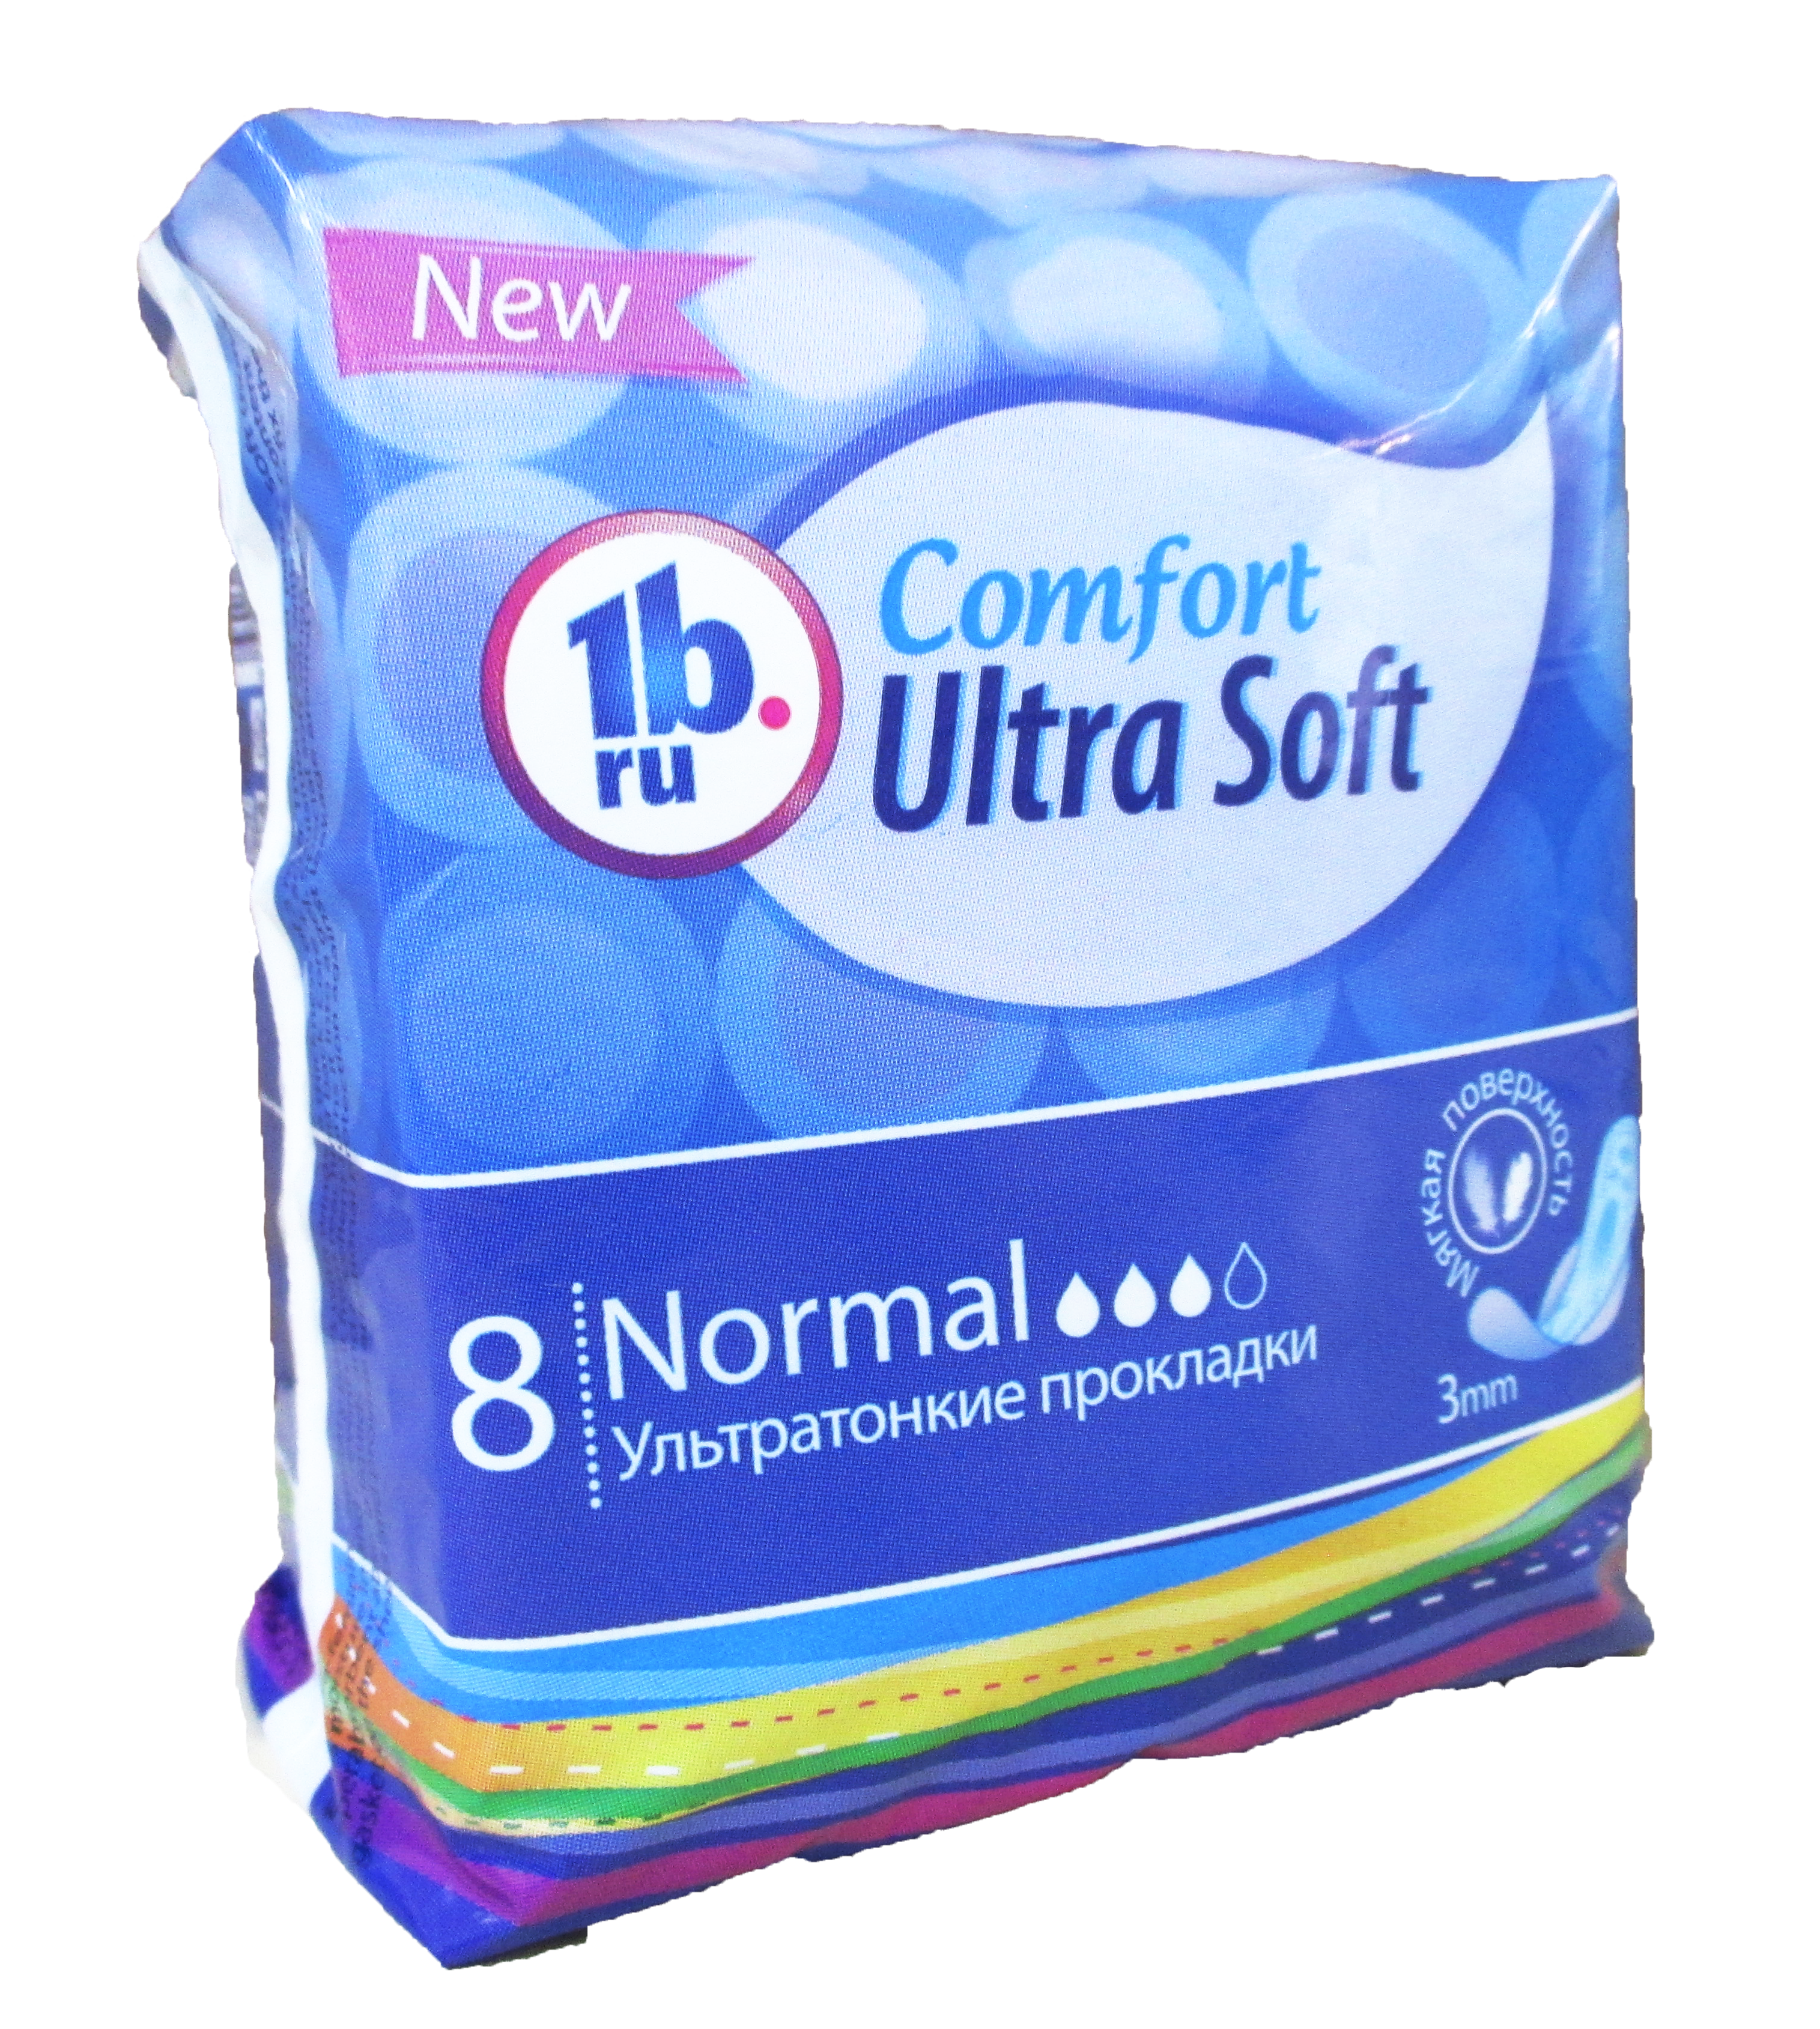 Comfort 1b.ru Soft 8 шт. ультратонкие прокл.